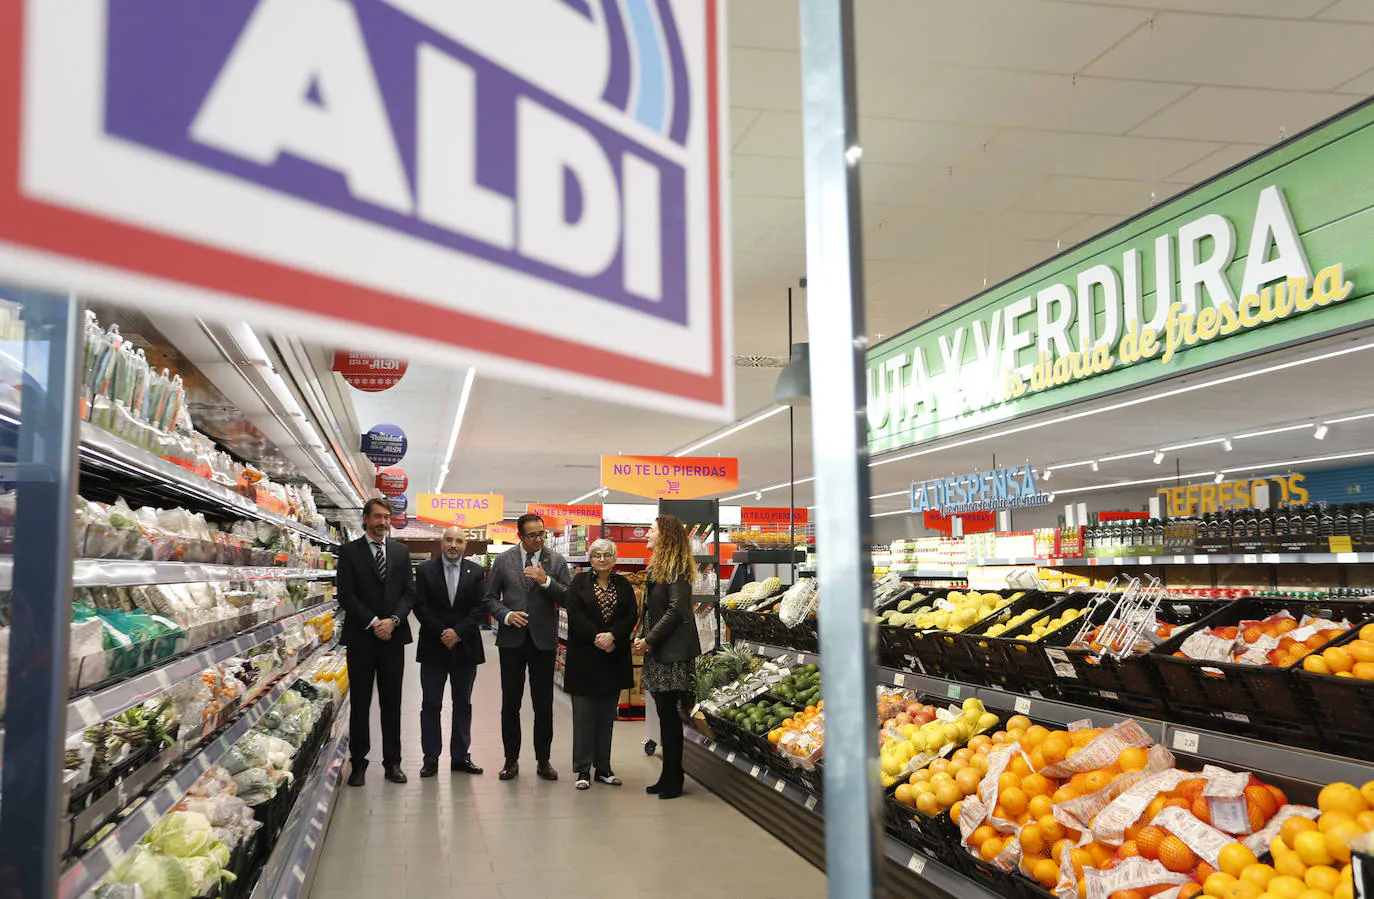 ALDI lanza un especial de productos de reciclaje a precios bajos